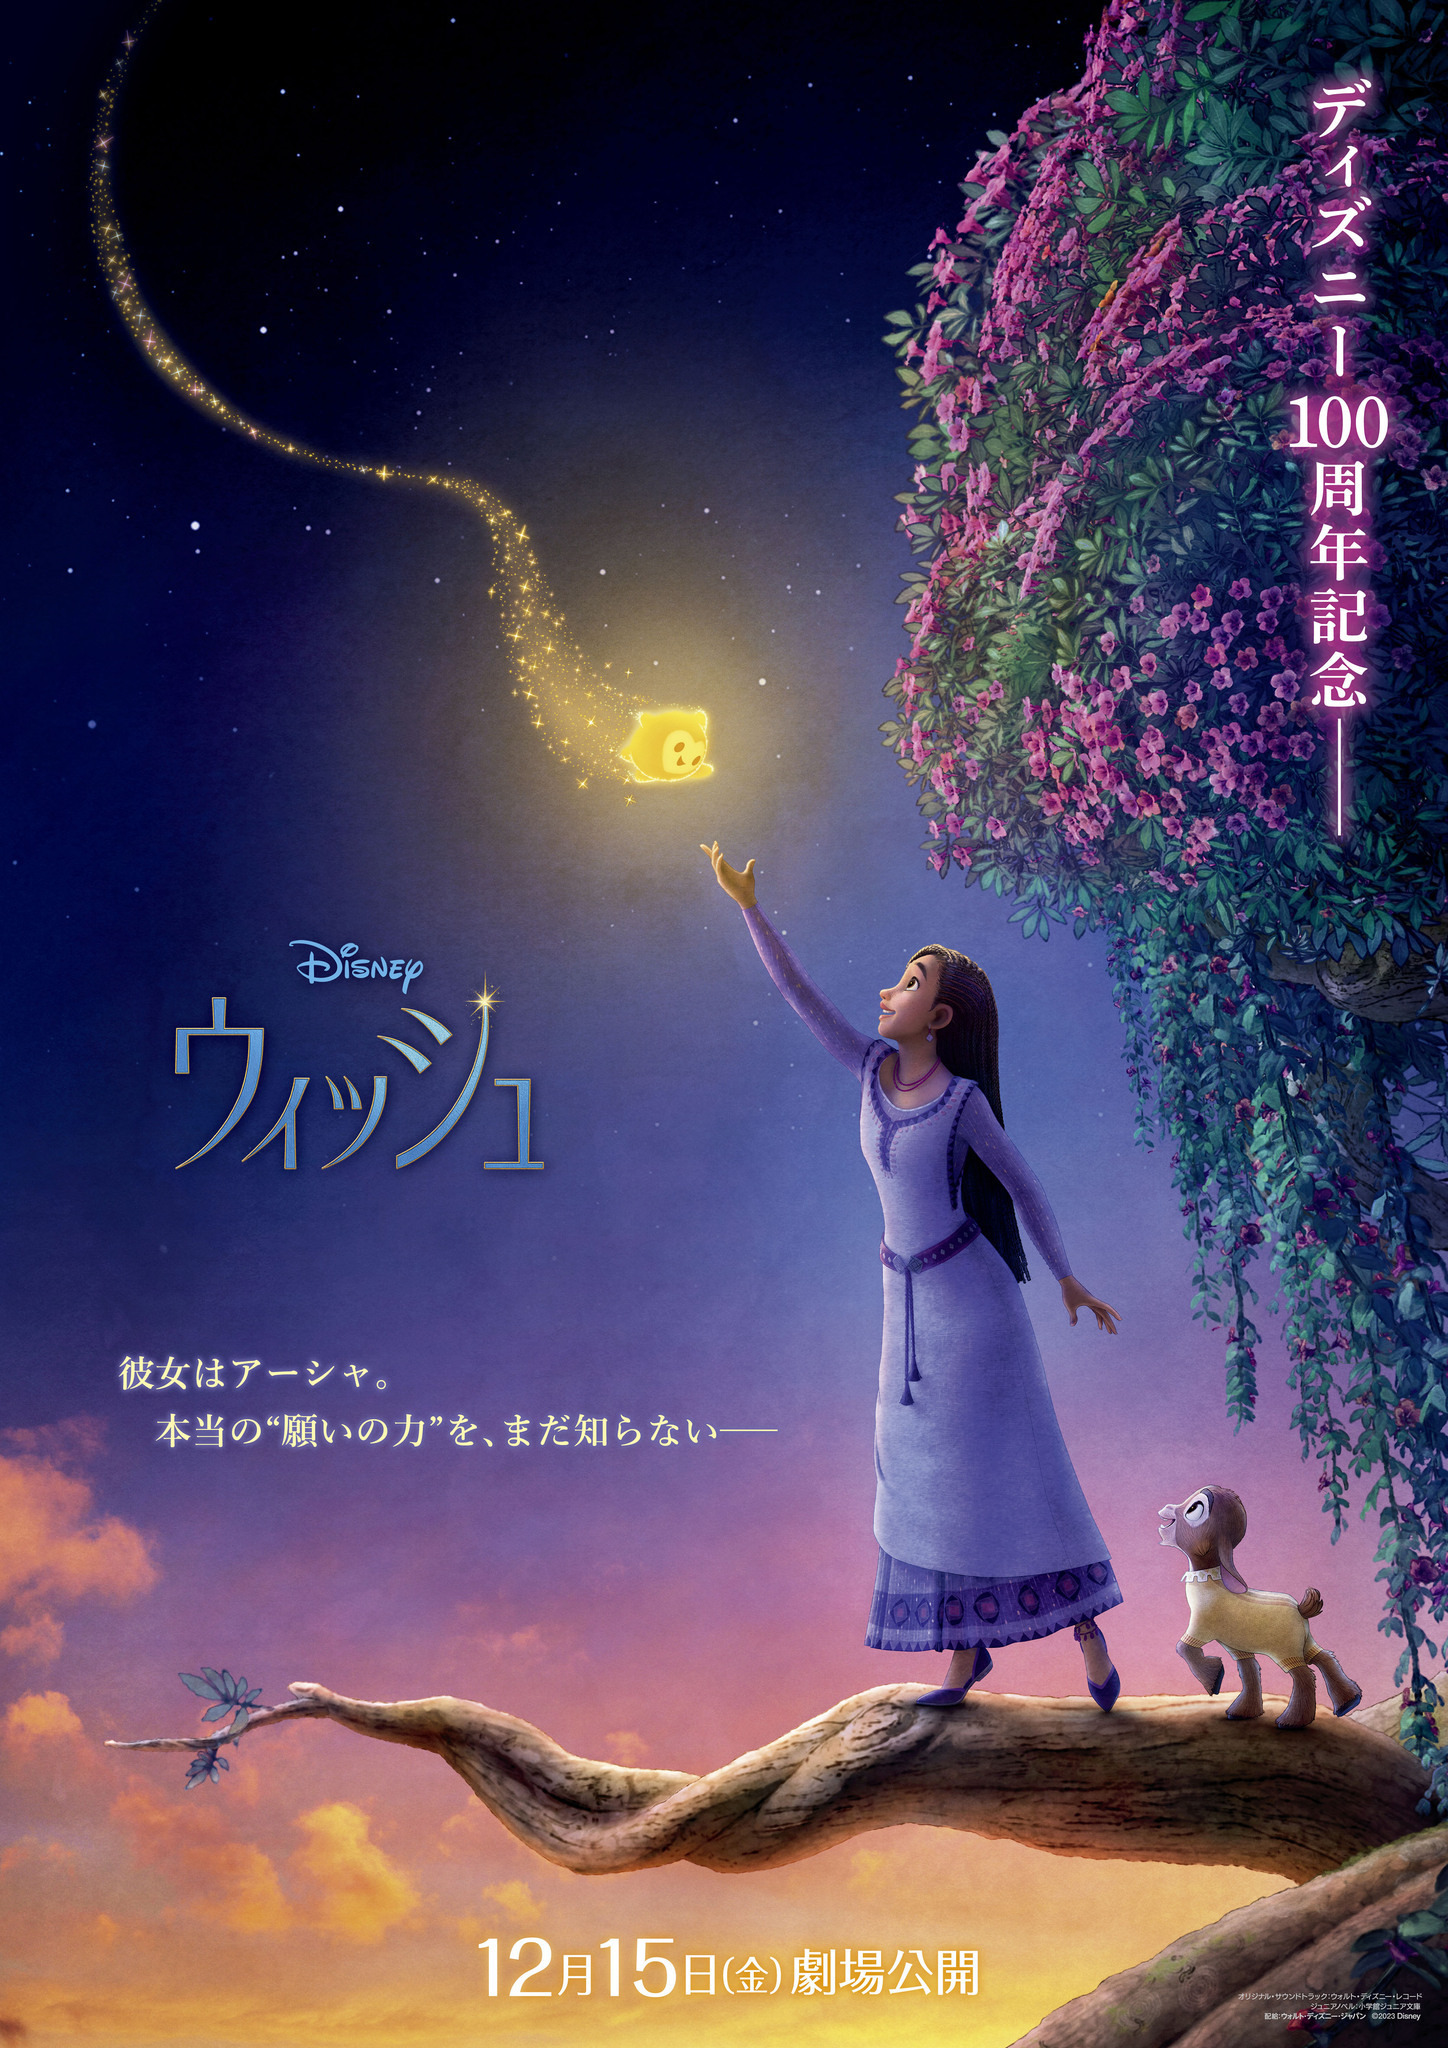 新ディズニー・ヒロイン“アーシャ”が願い星と出会う『ウィッシュ』日本